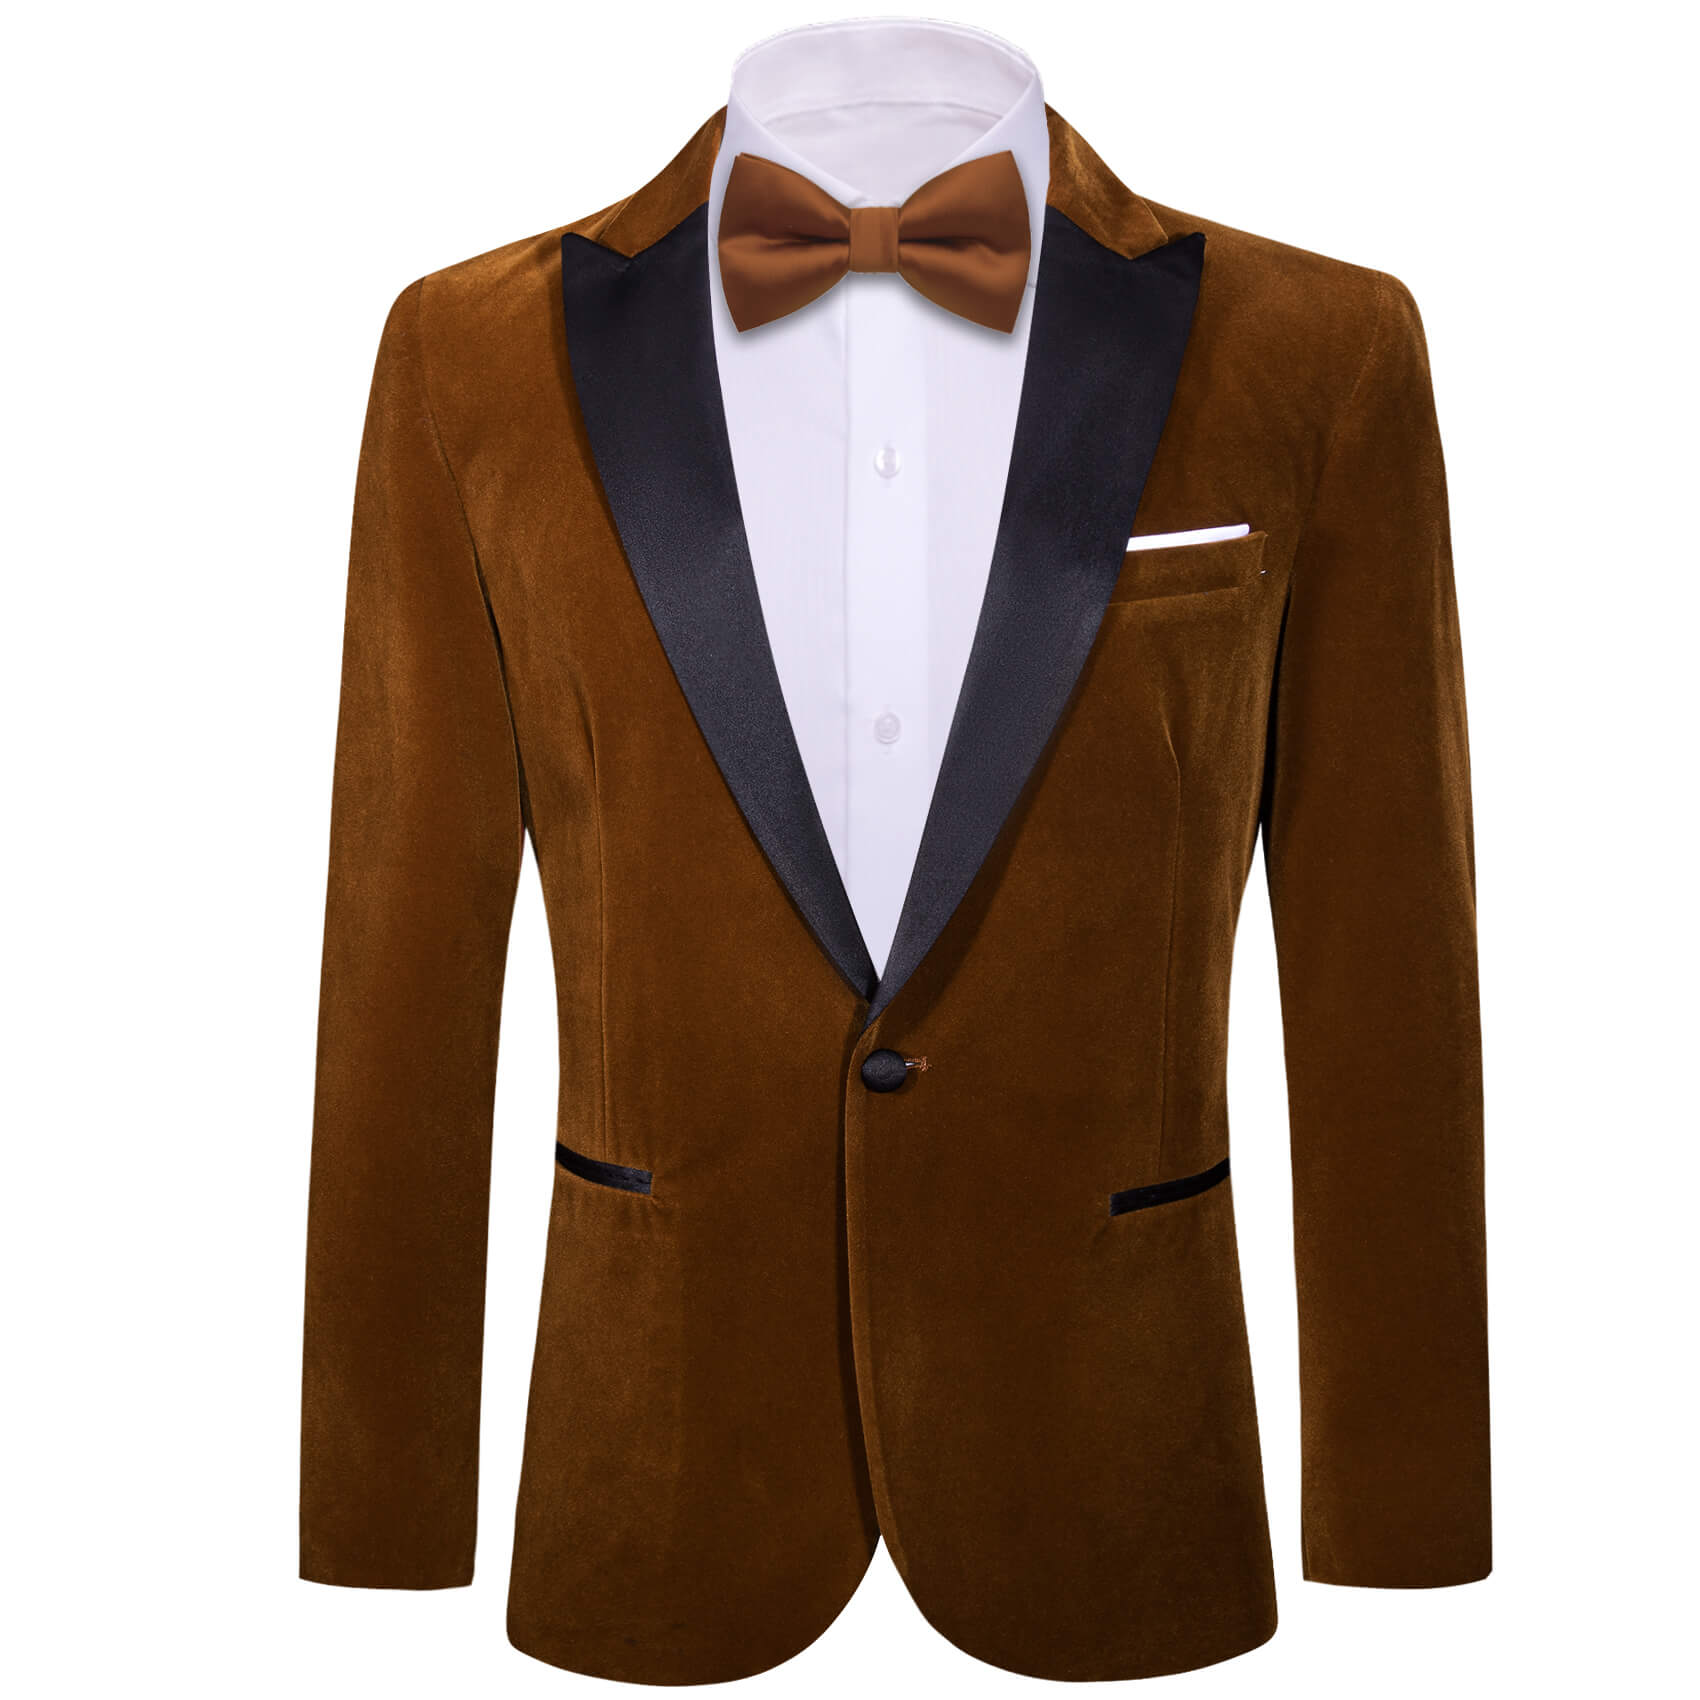 Buy Dark Chocolate Brown Resham Embroidered Italian Classic Suit Online |  Samyakk